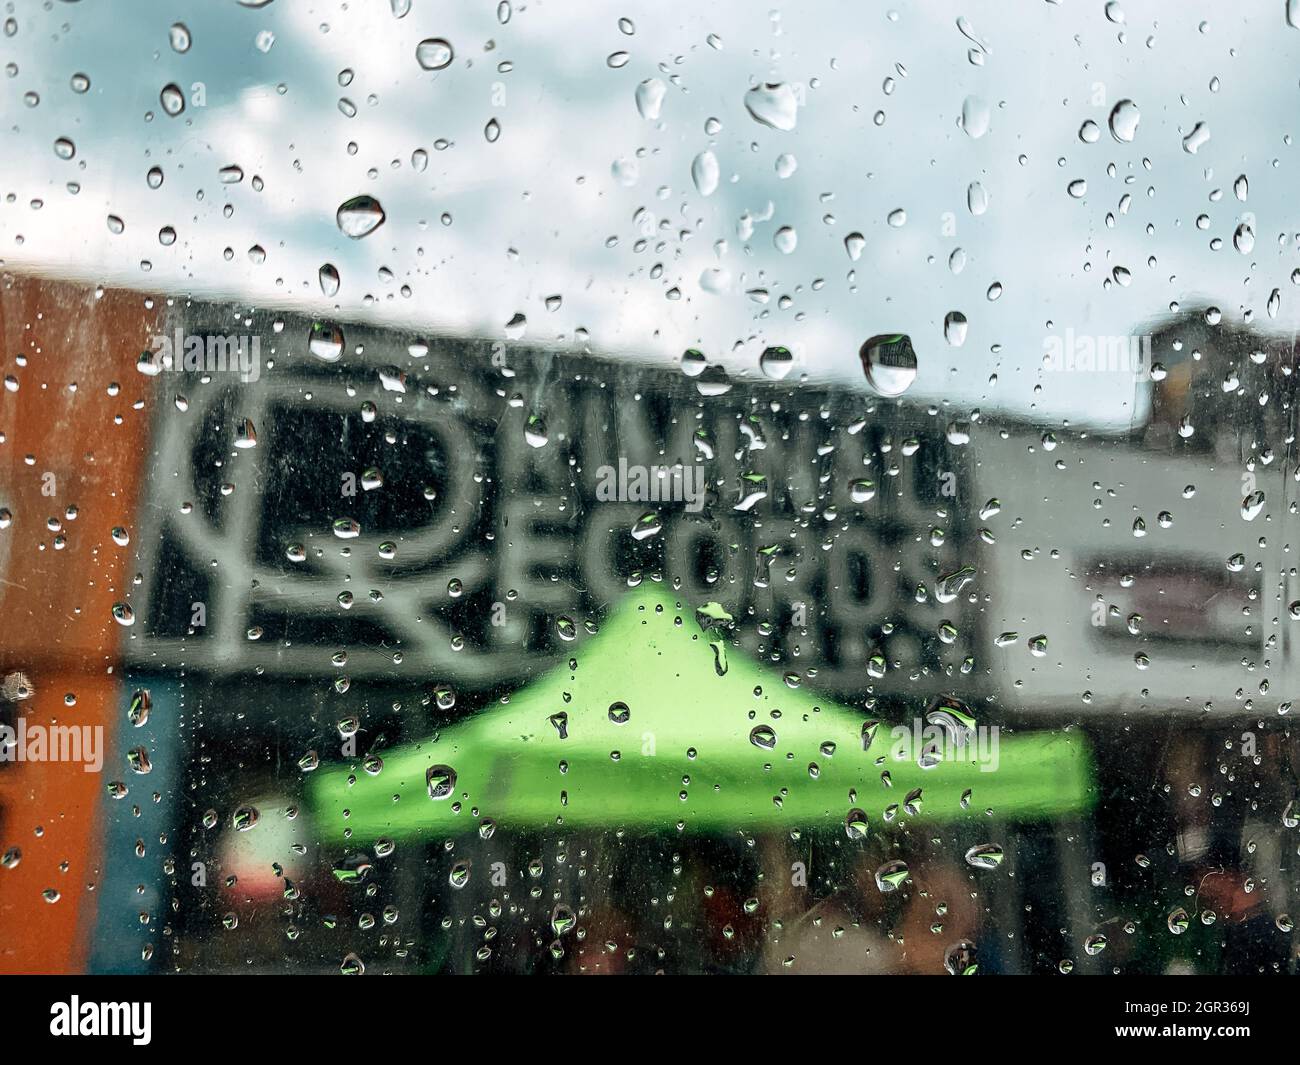 ATLANTA, ÉTATS-UNIS - 15 août 2021 : un point de vue du magasin de casier judiciaire à Atlanta, Géorgie visible par la fenêtre couverte de pluie Banque D'Images